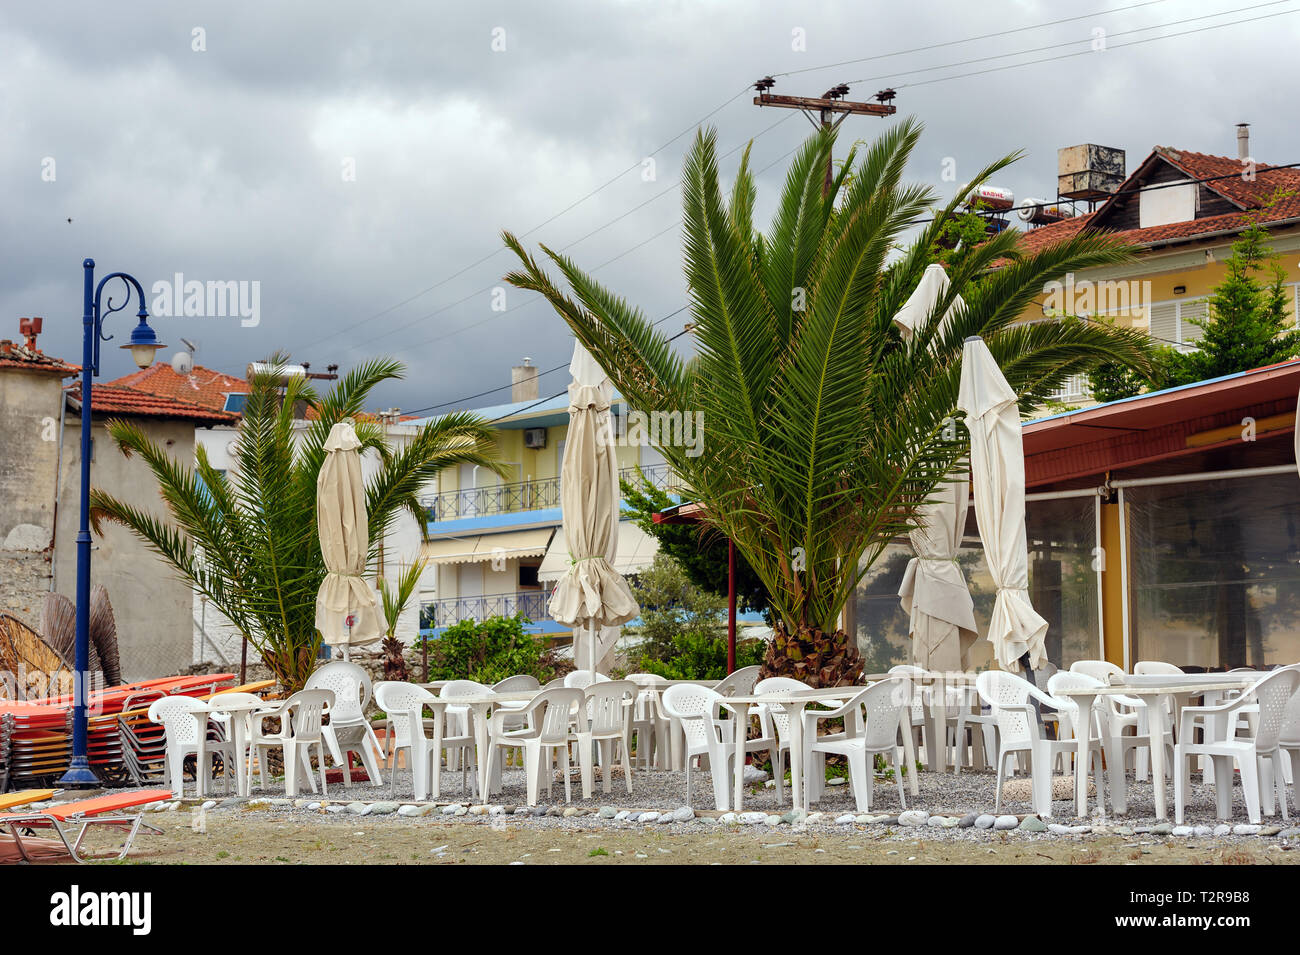 Leptokaria, Pieria, Macedonia centrale, Grecia - 11 Maggio 2015: Vuoto outdoor cafe presso la spiaggia appena preparato per il periodo di alta stagione Foto Stock